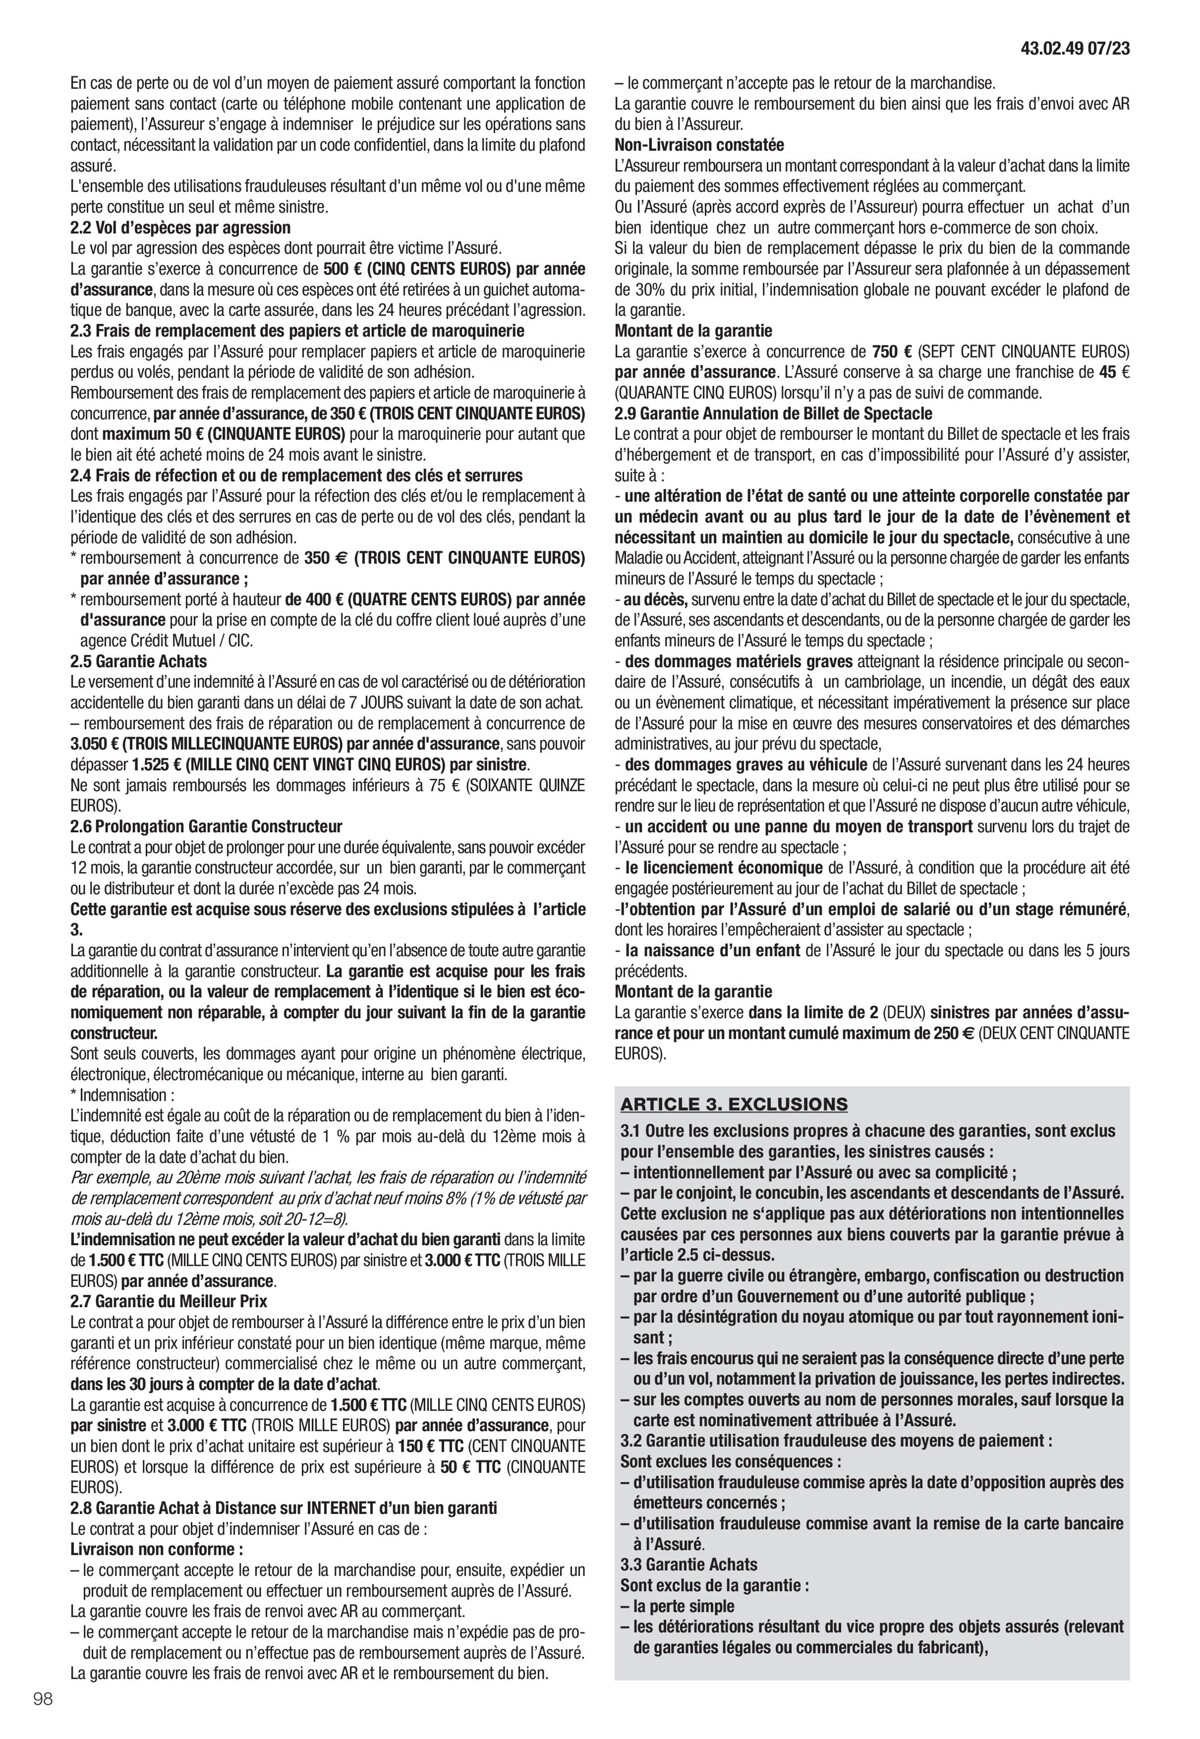 Catalogue Conditions générales Particuliers, page 00100